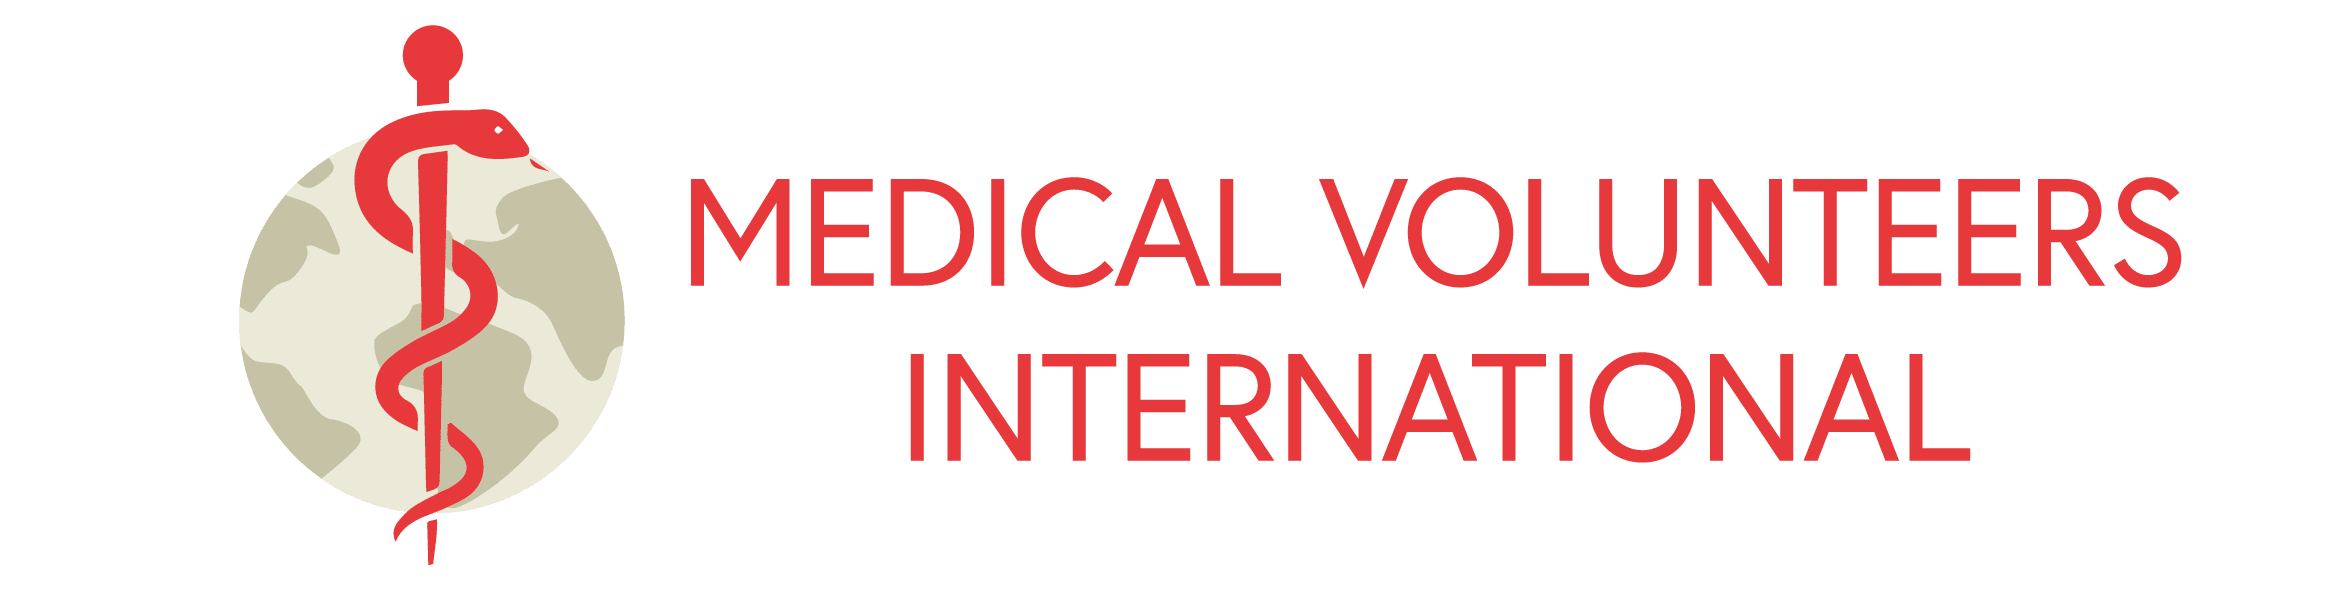 Medical Volunteers International logo